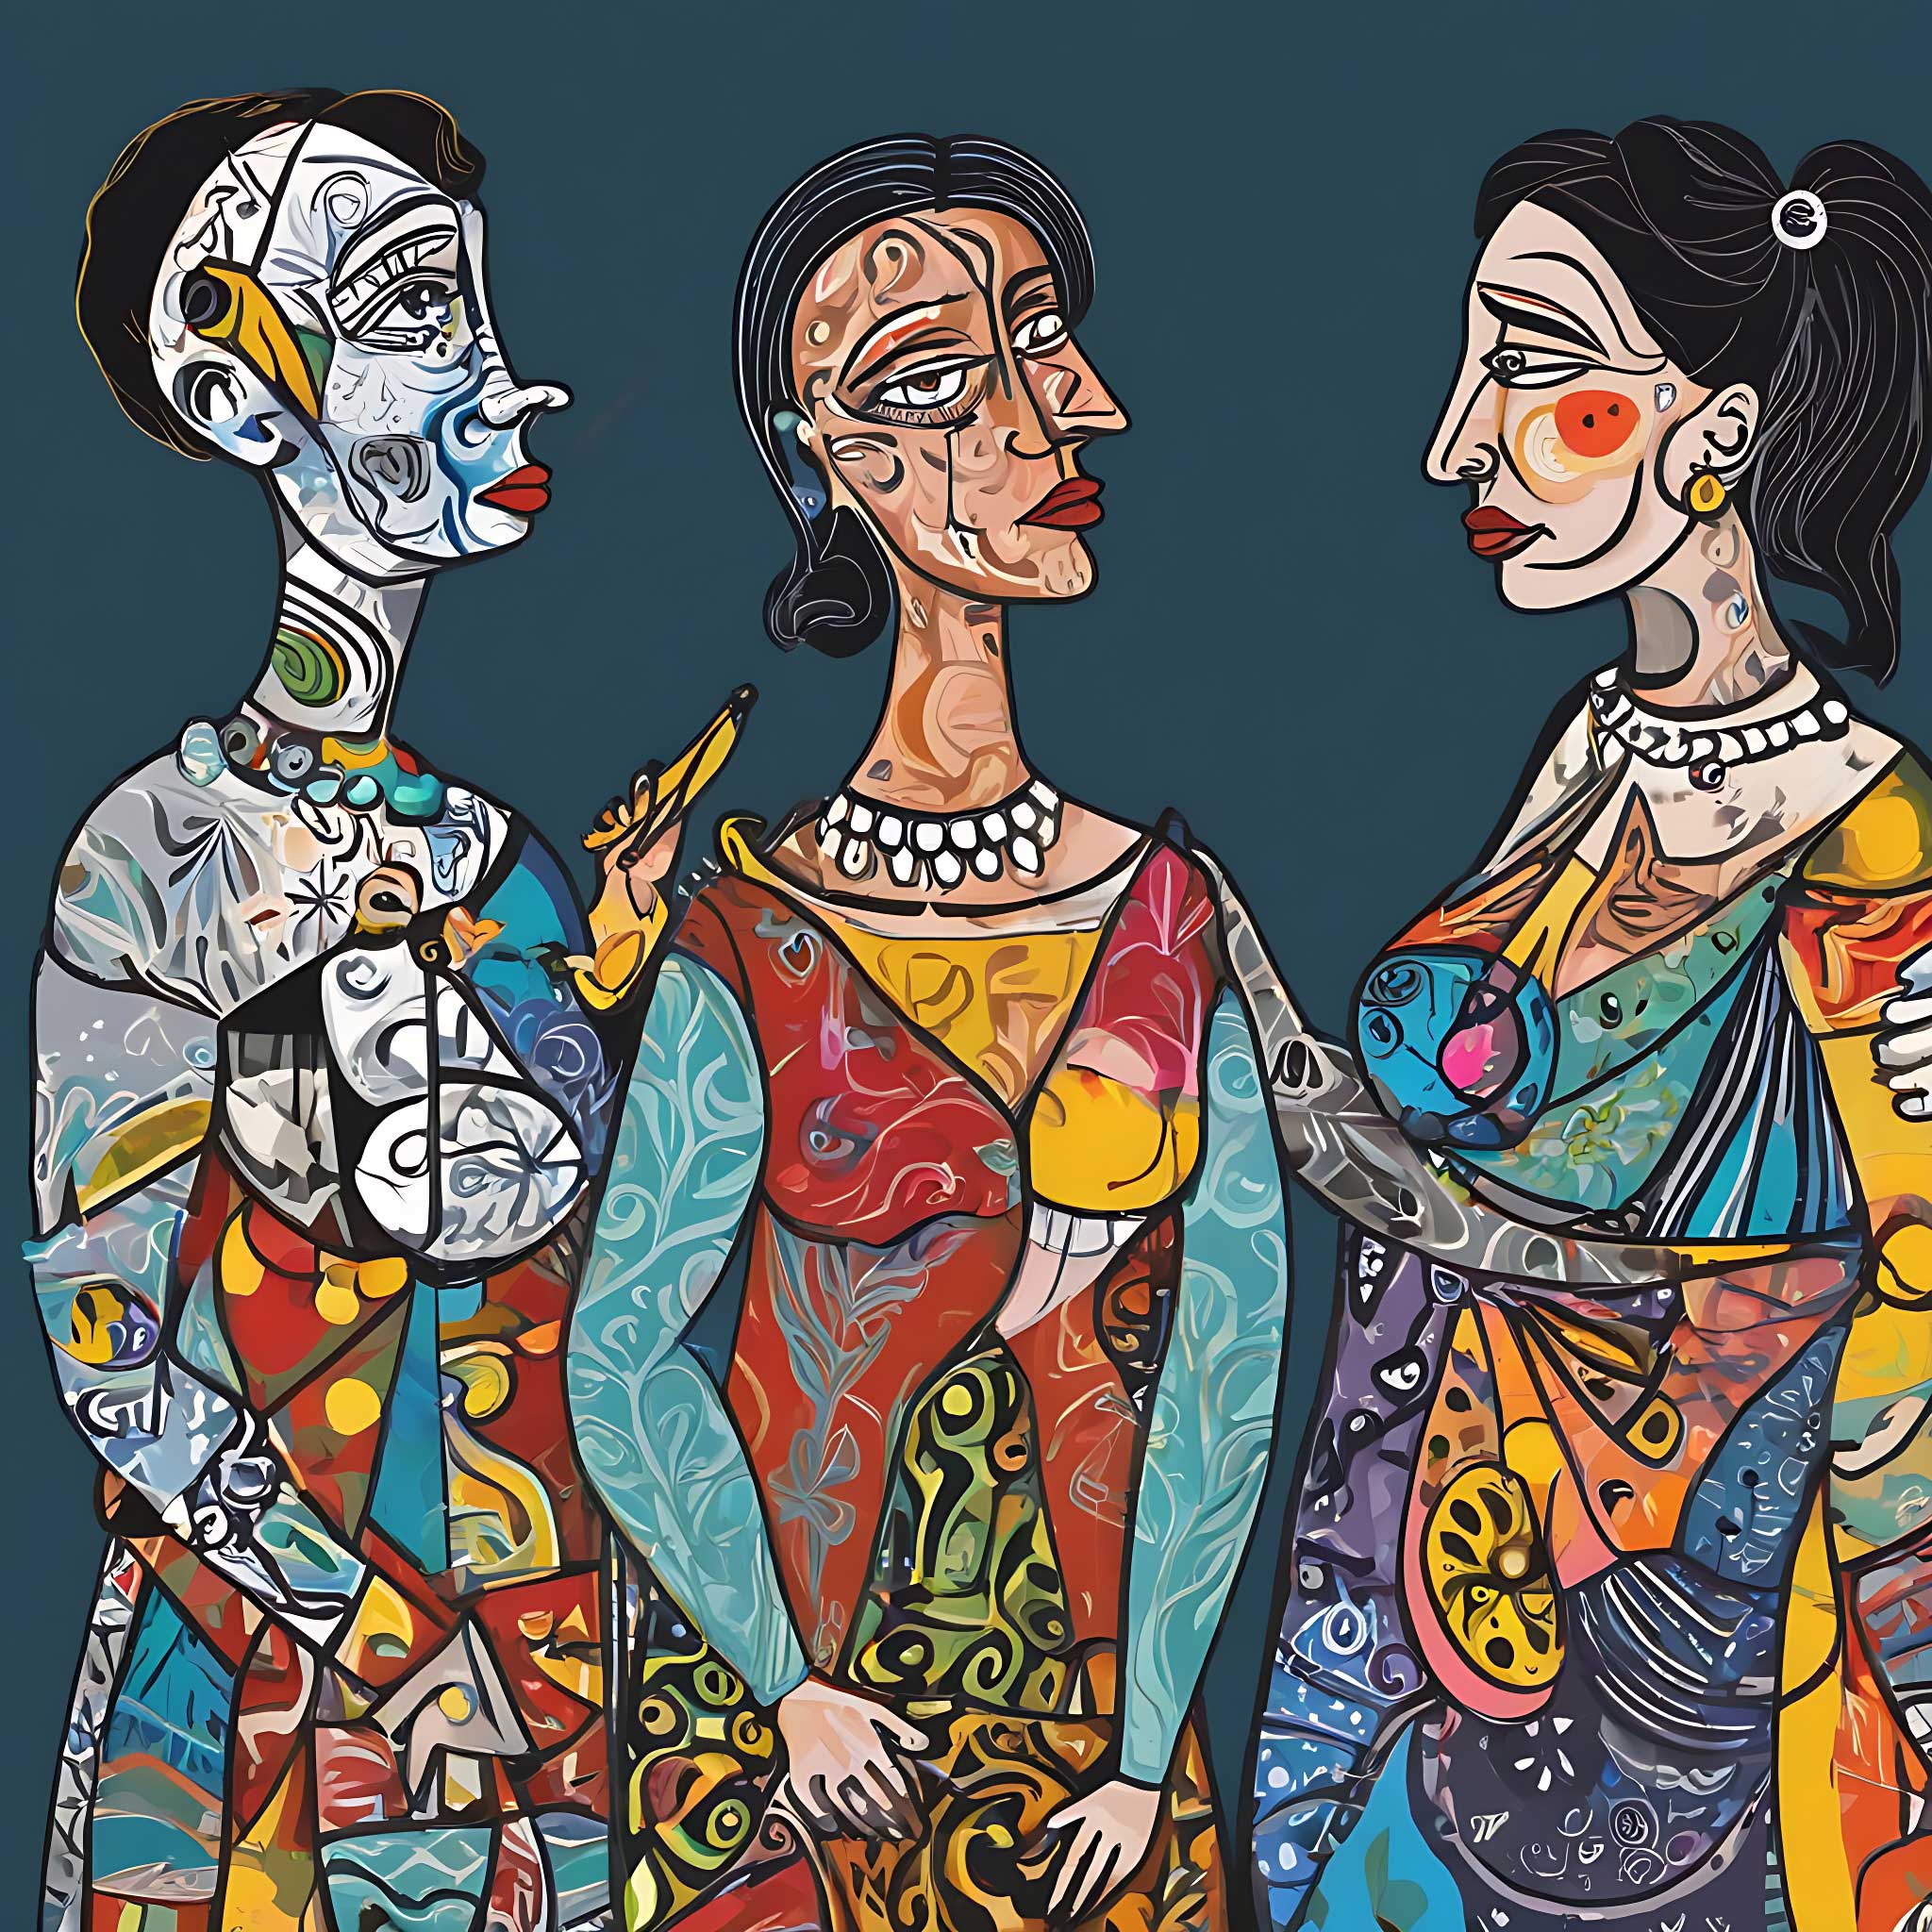 Las mujeres en la vida de Pablo Picasso